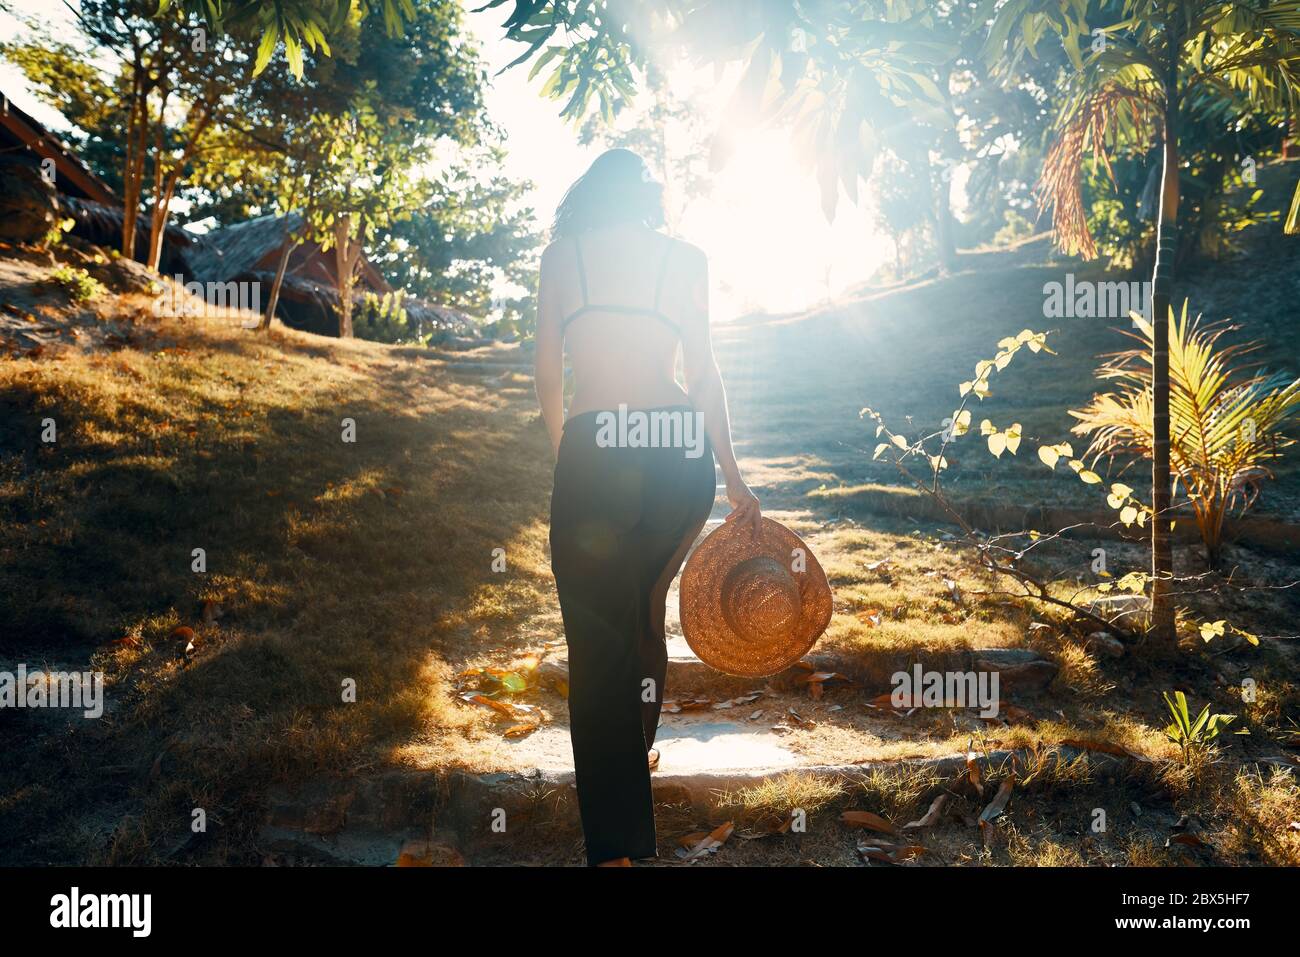 Vue arrière de la jeune femme en chapeau de paille marchant dans les escaliers dans le parc tropical vert à la lumière du soleil. Réussite, concept d'objectif Banque D'Images